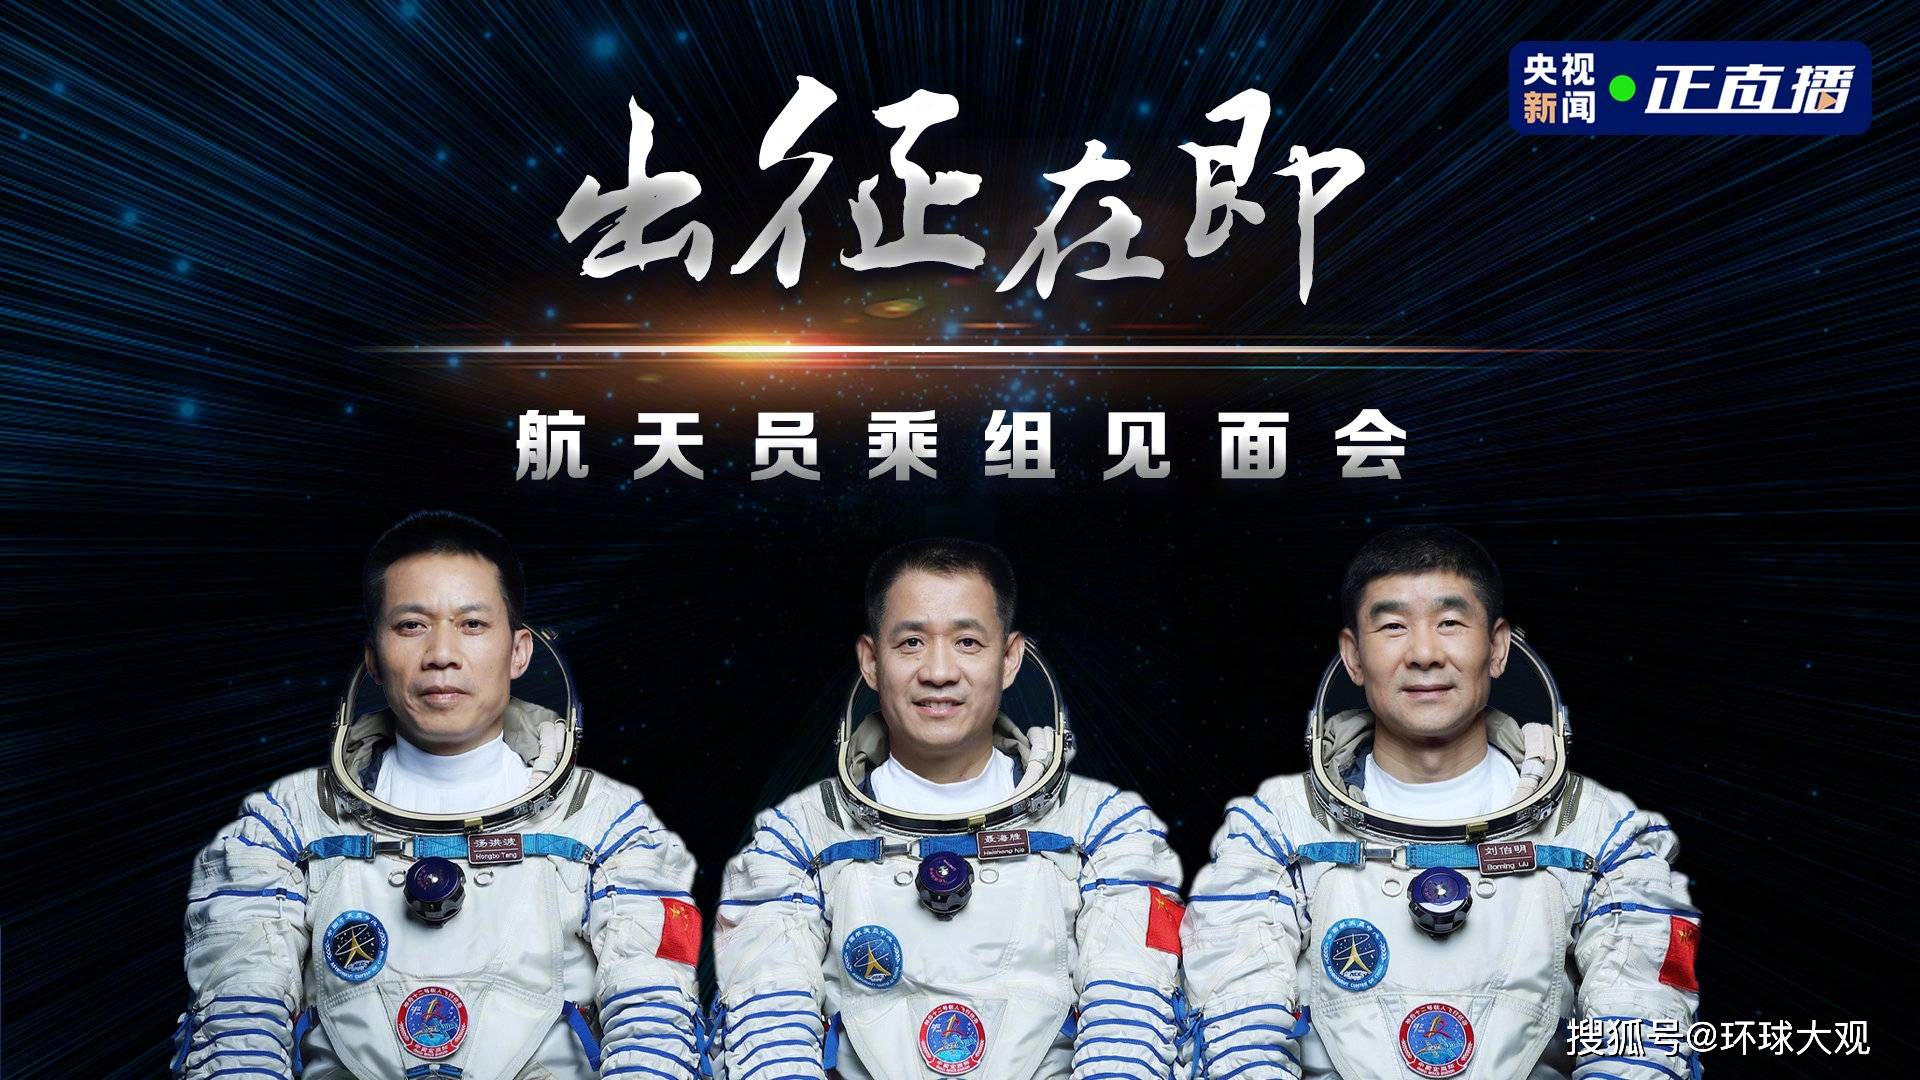 3名宇航员将在空间站生活3个月,本次任务有哪些看点?